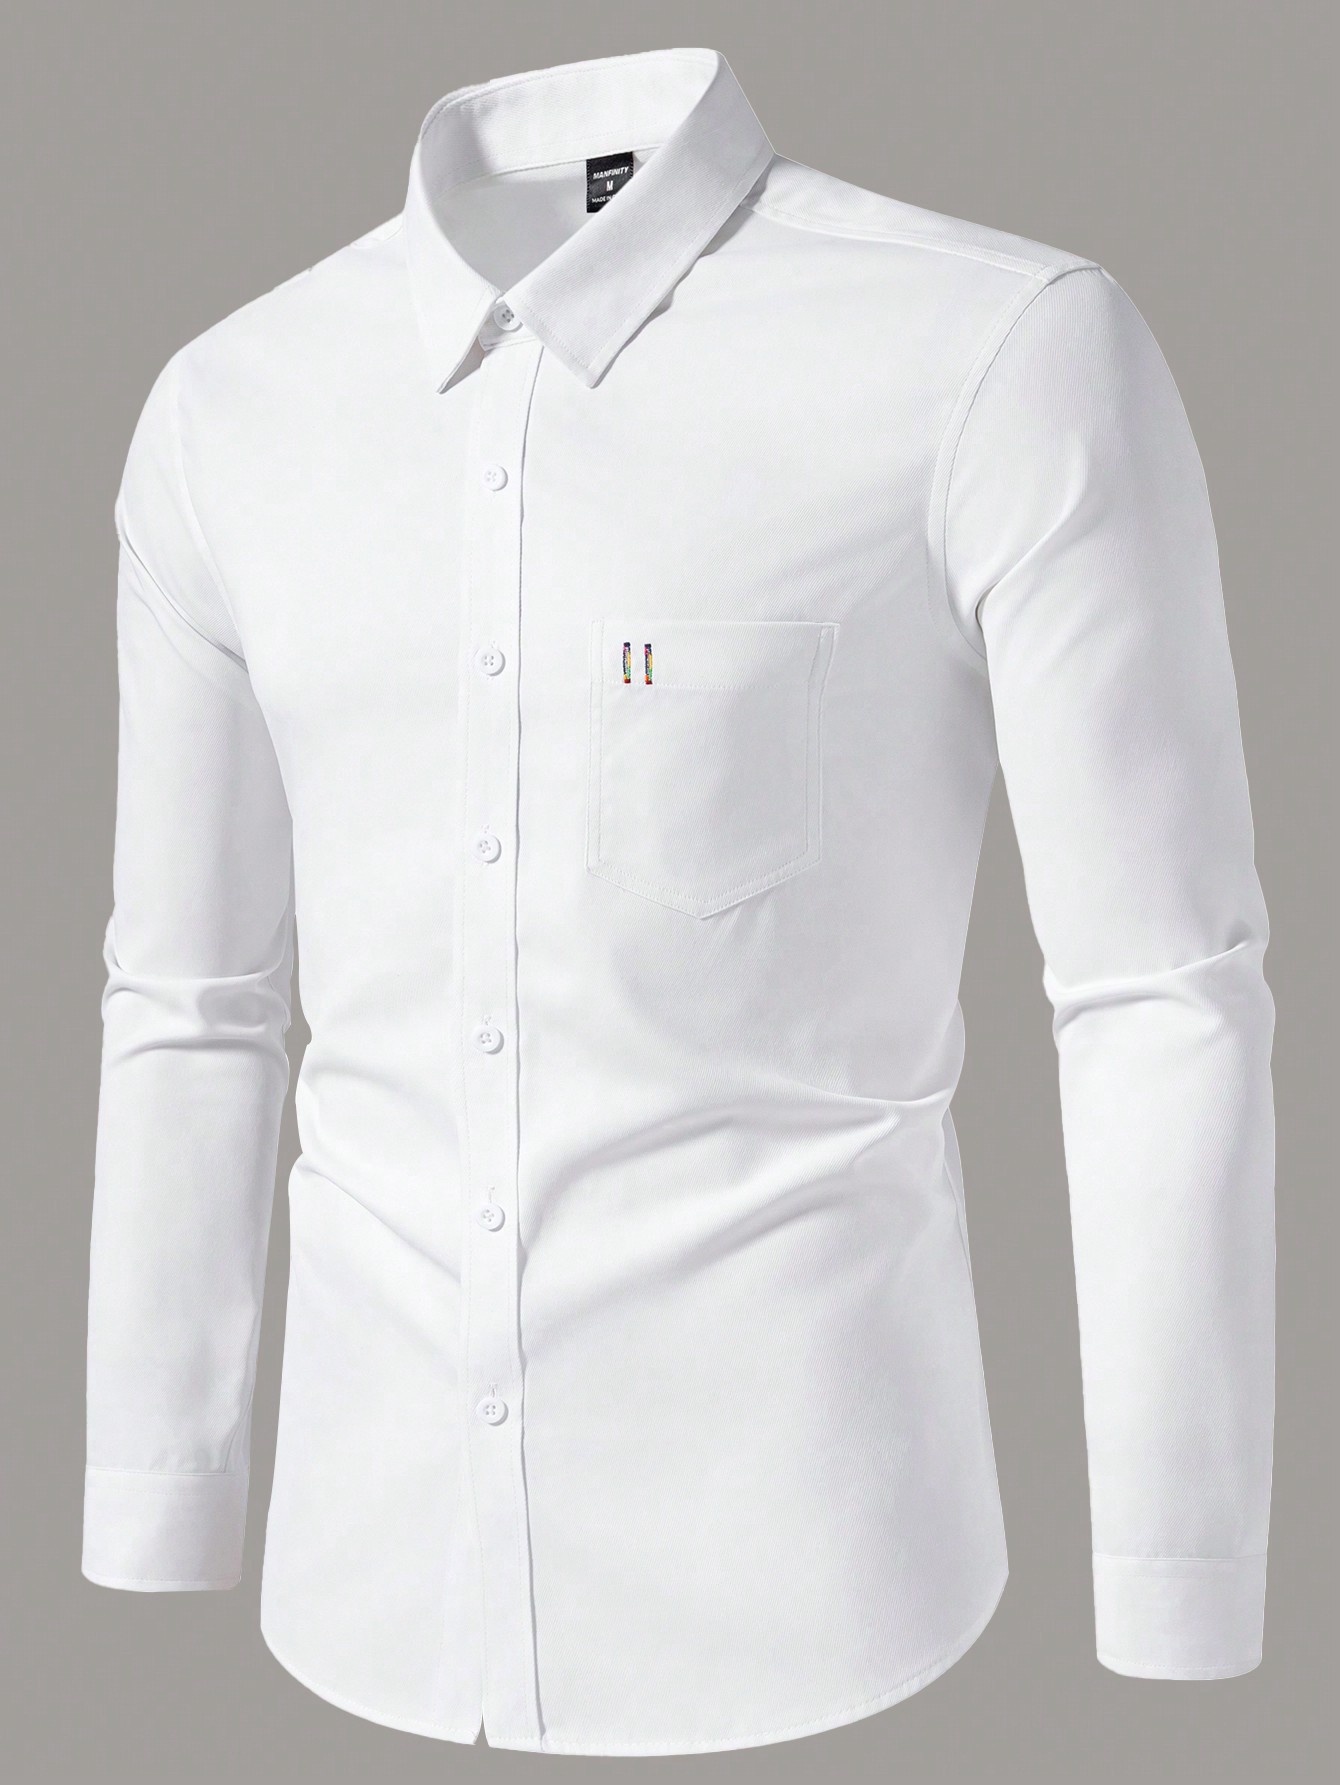 Мужская повседневная рубашка с длинным рукавом с принтом Manfinity Homme, белый рубашка мужская с длинным рукавом повседневная модная сорочка с 3d принтом топ с коротким рукавом винтажная повседневная цветная одежда